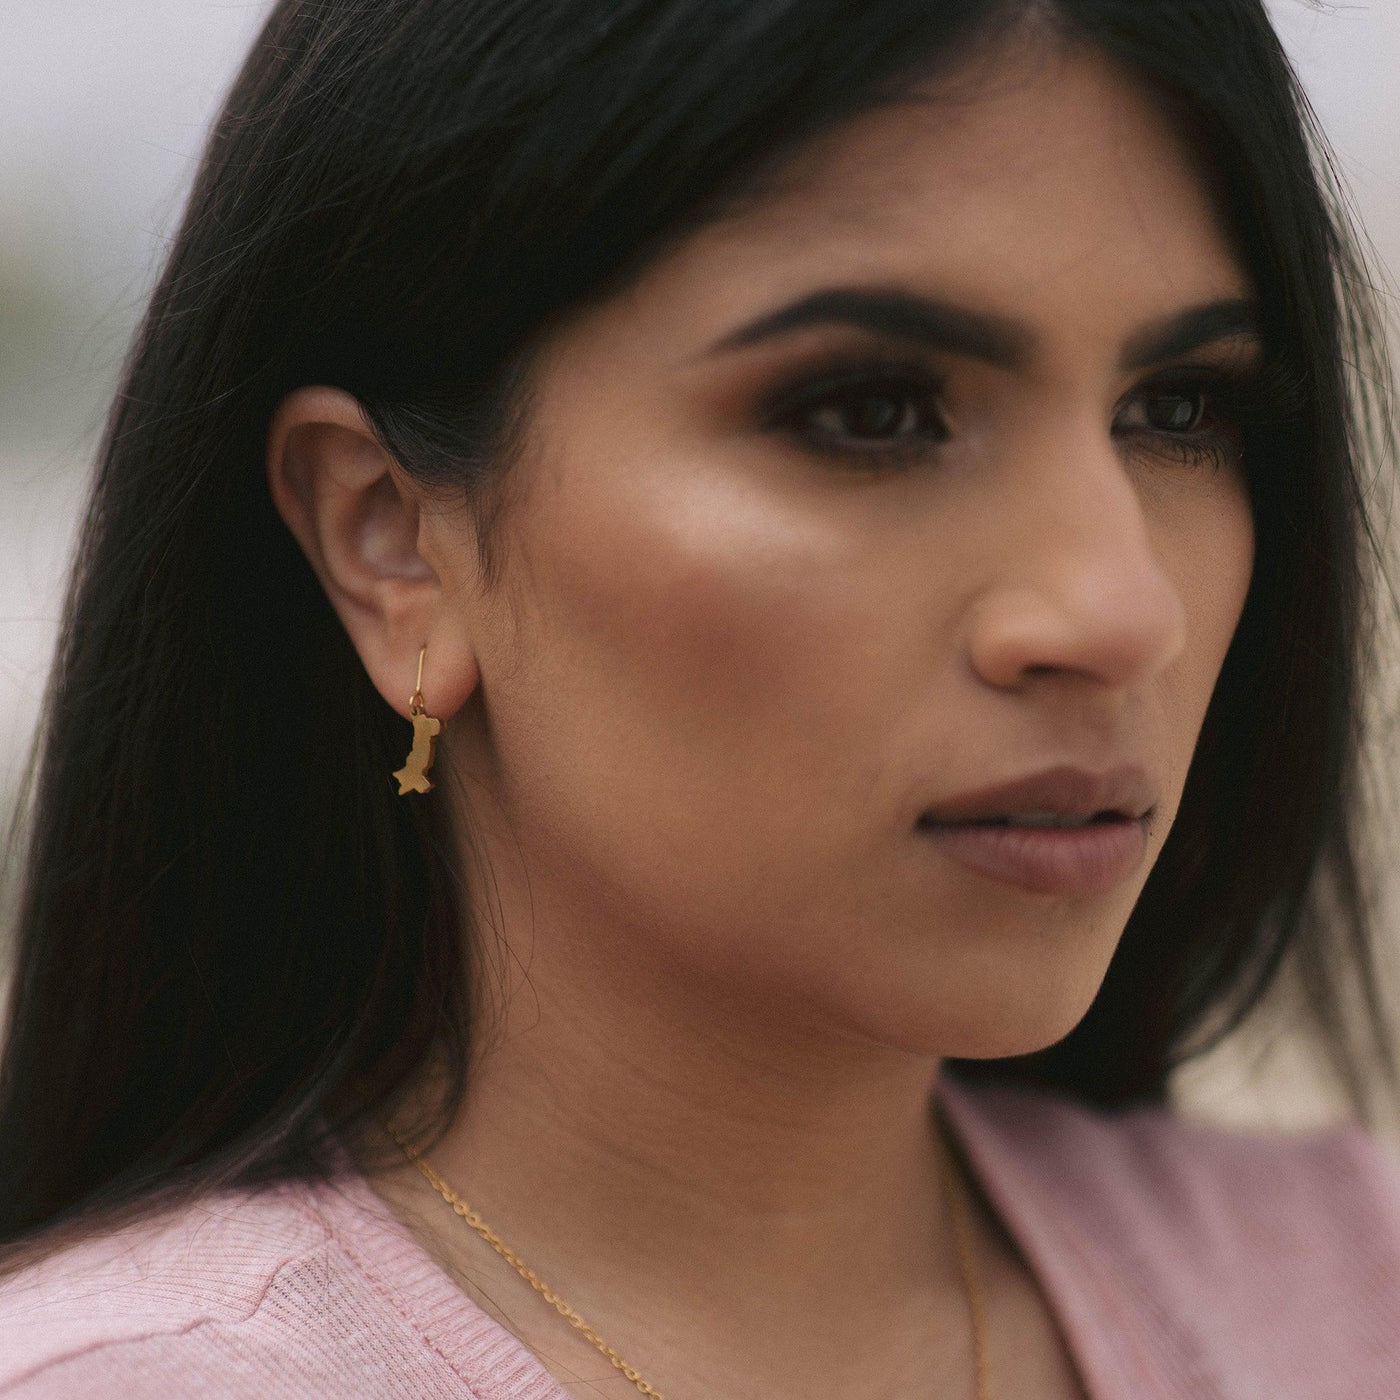 ZUDO_pakistan-map-earrings-lifestyle